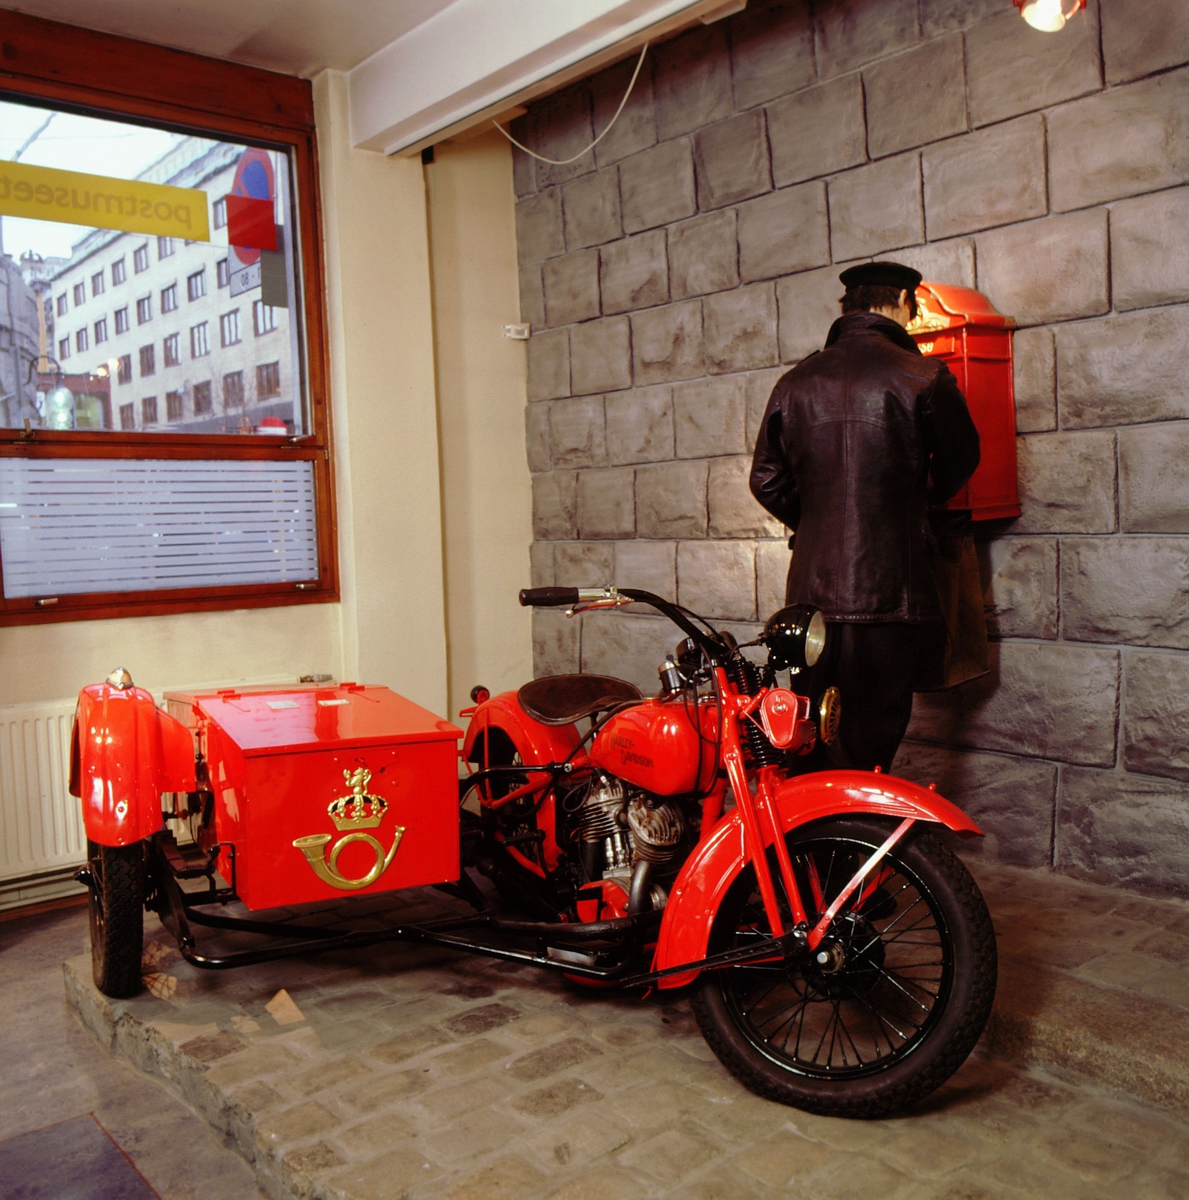 postmuseet, utstilling, transport, motorsykkel, Harley Davidson med sidevogn og postlogo i gull, postbud i skinnjakke tømmer postkassen